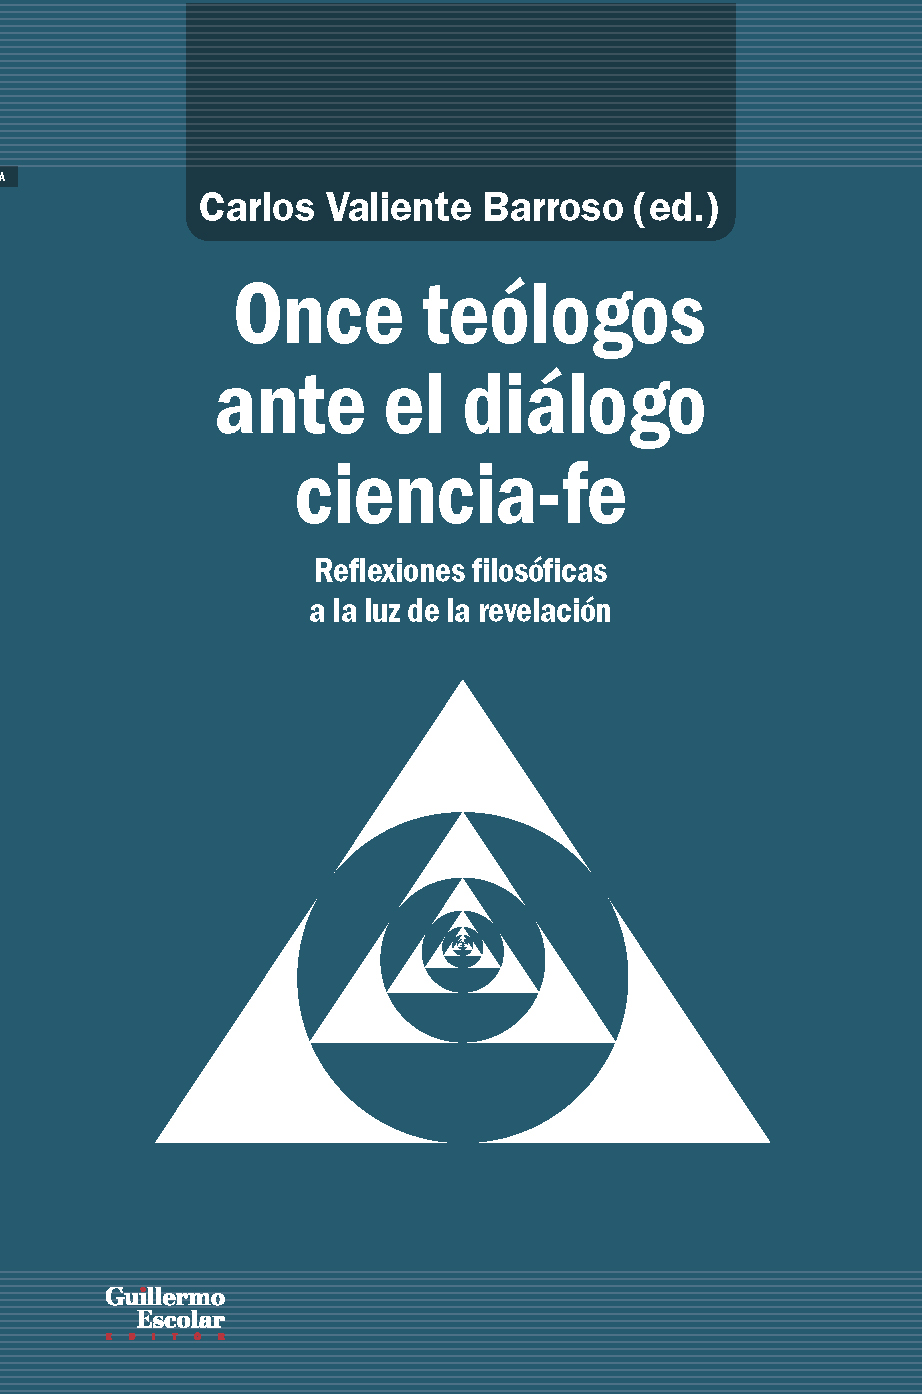 Imagen de portada del libro Once teólogos ante el diálogo ciencia-fe